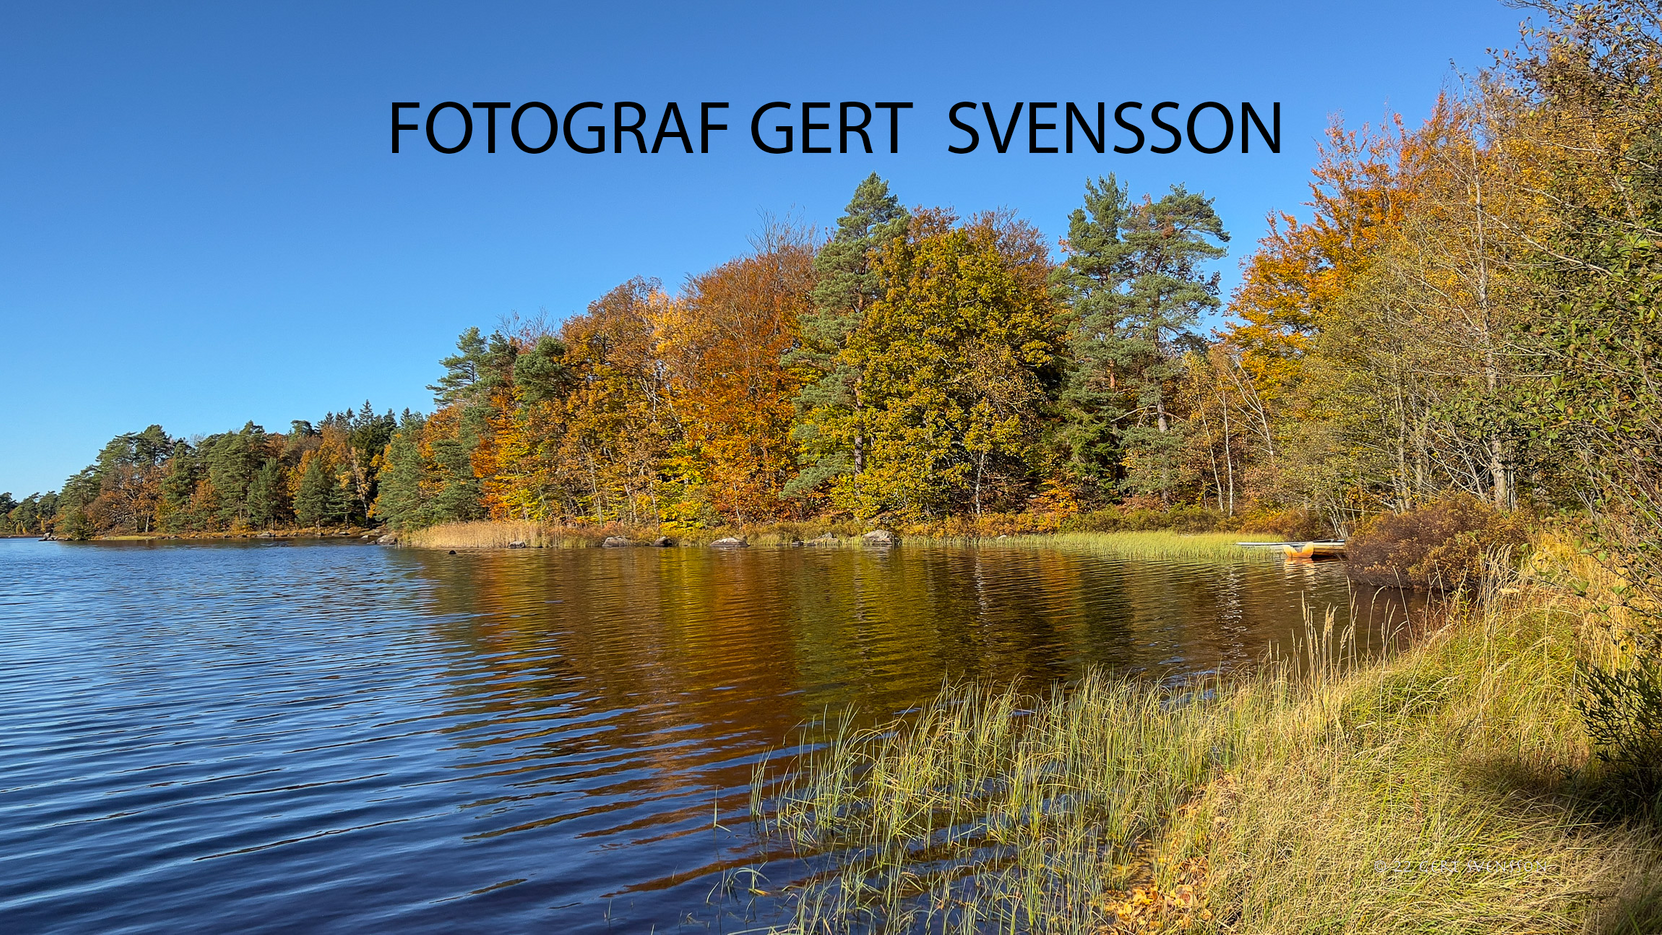 Fotograf Gert Svensson